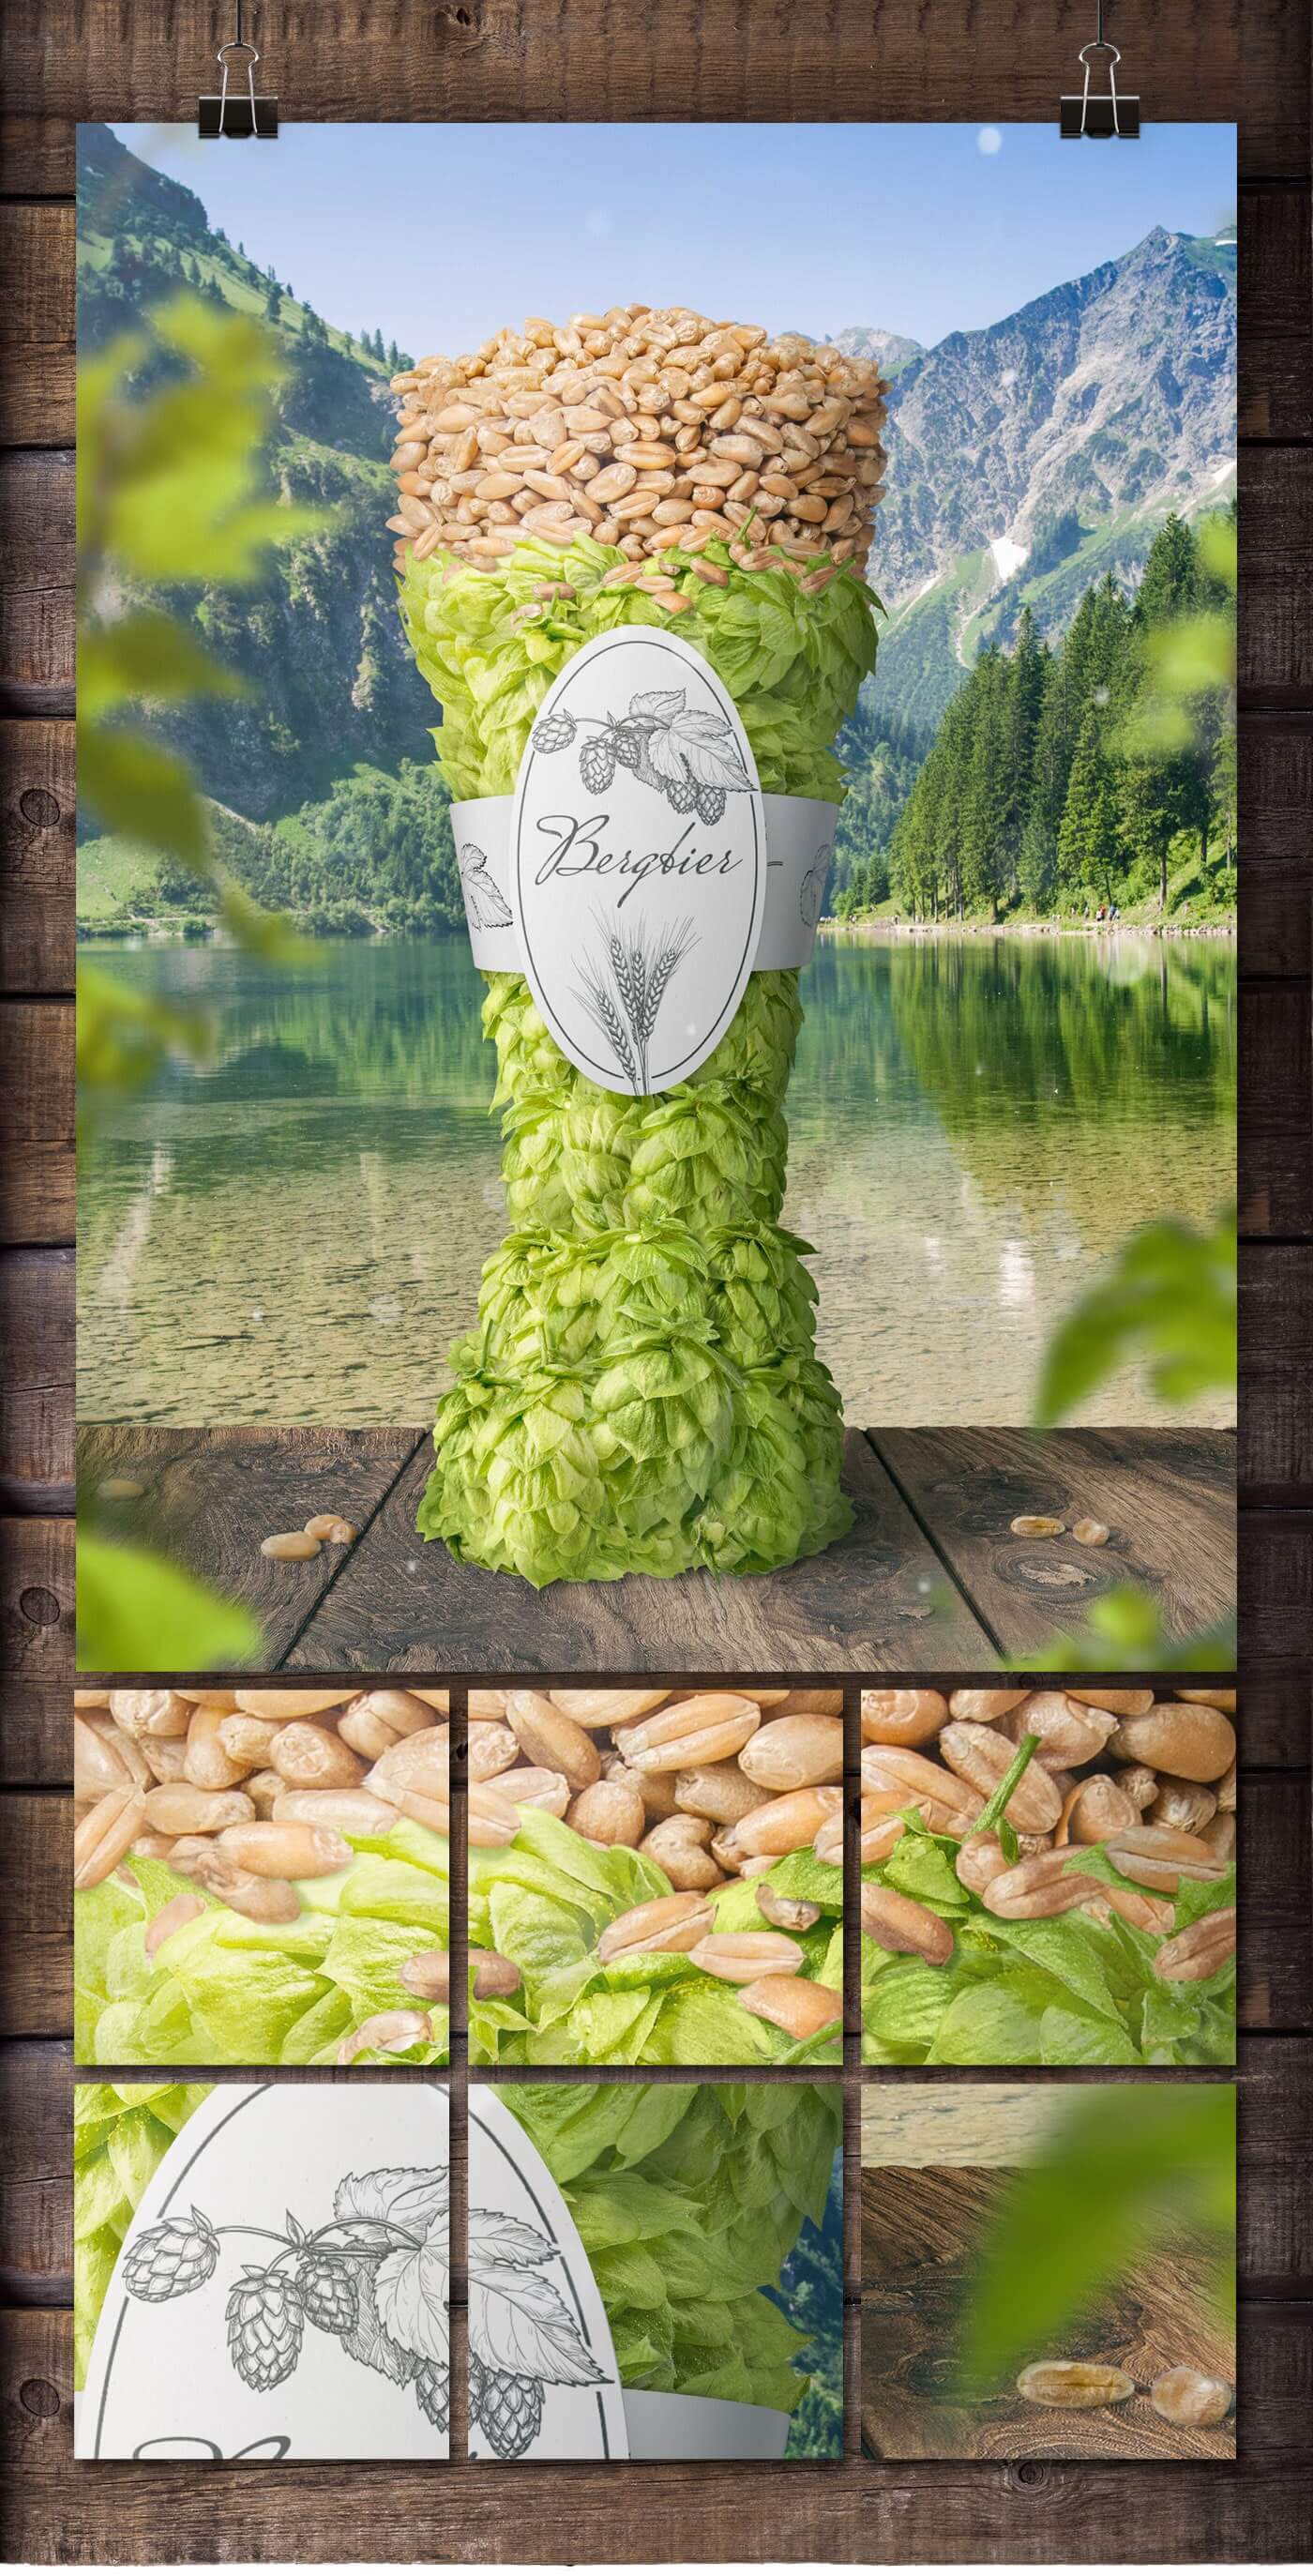 bier bergbier artwork - packshot mit ganzen früchten - hopfen und weizen - detailansichten